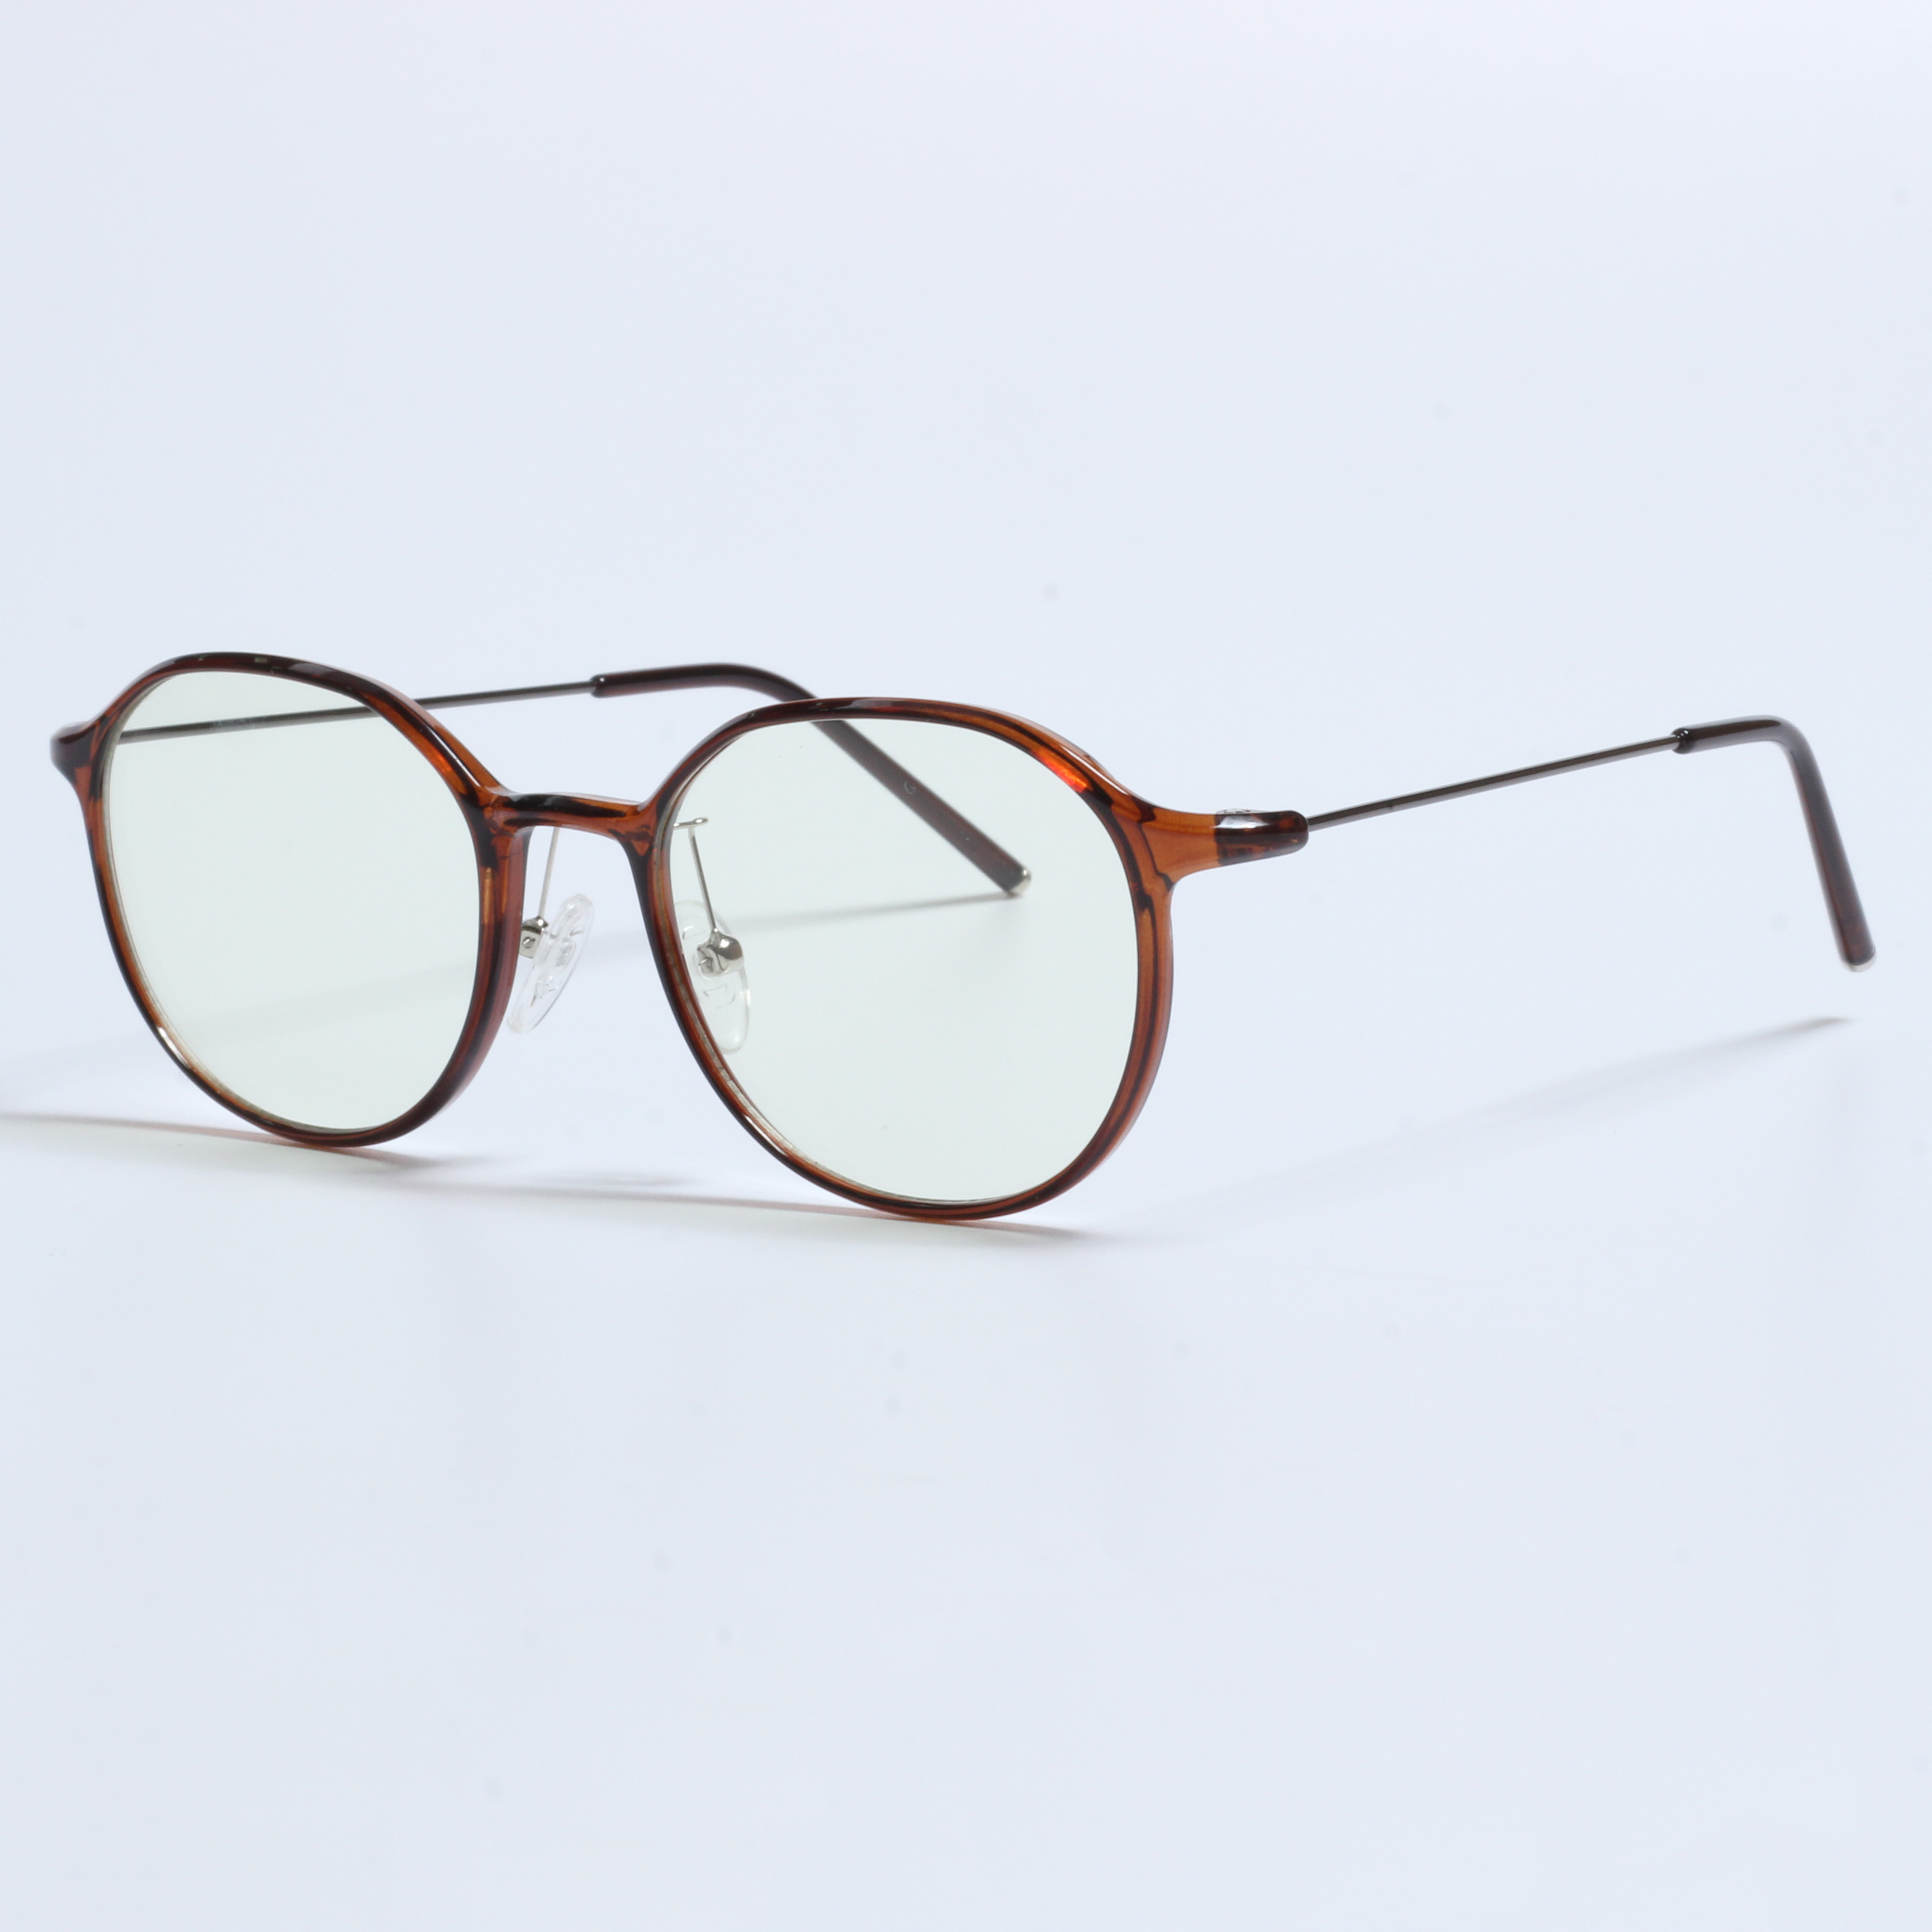 Vintage Thick Gafas Opticas De Hombres Transparent TR90 Frames (8)